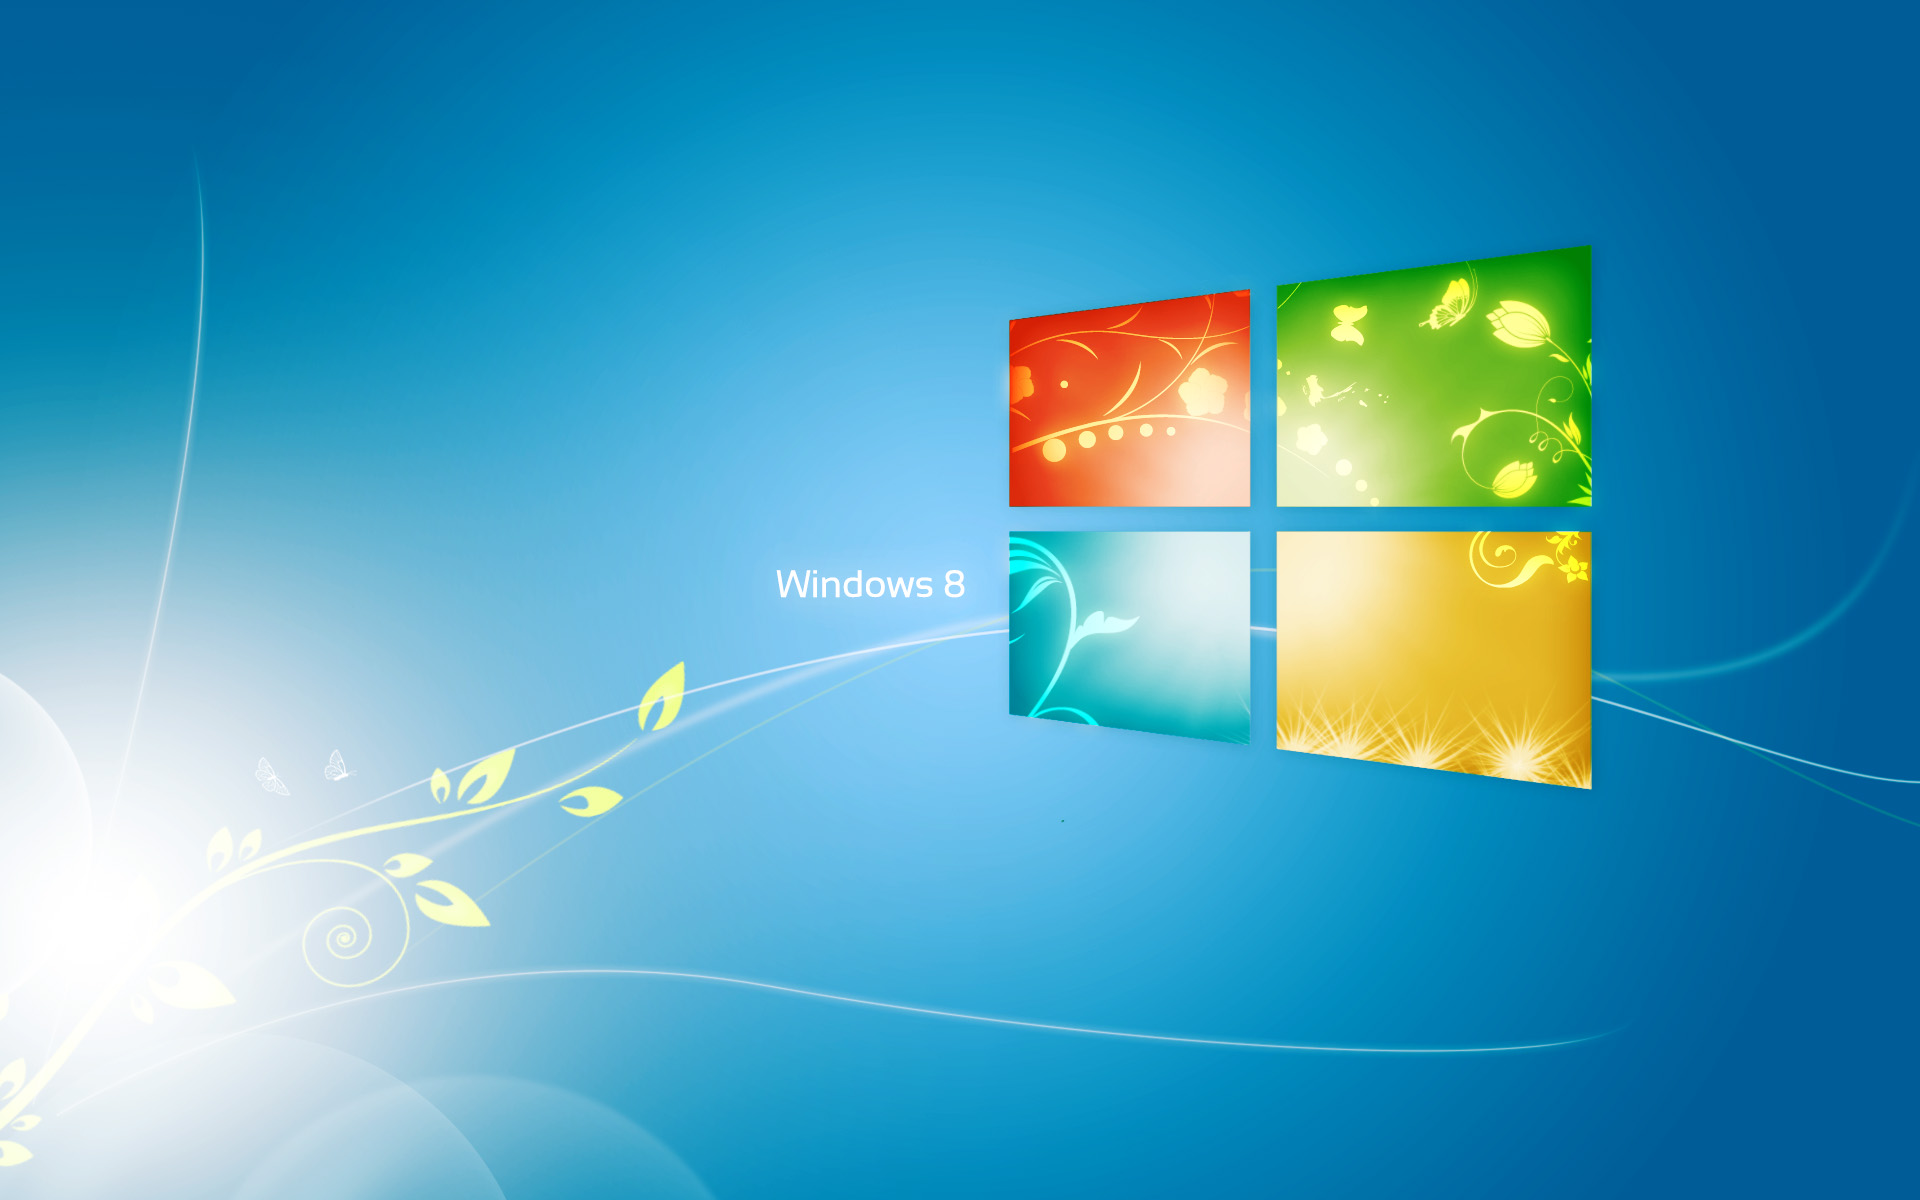 Nếu bạn đang tìm kiếm một hình nền Windows 8.1 đẹp và ấn tượng, hãy đến với chúng tôi! Chúng tôi cung cấp những hình nền độc đáo, đẹp mắt và phù hợp với mọi phong cách. Hãy cập nhật cho chiếc máy tính của mình một nét mới hoàn toàn với hình nền đẹp nhất từ chúng tôi!